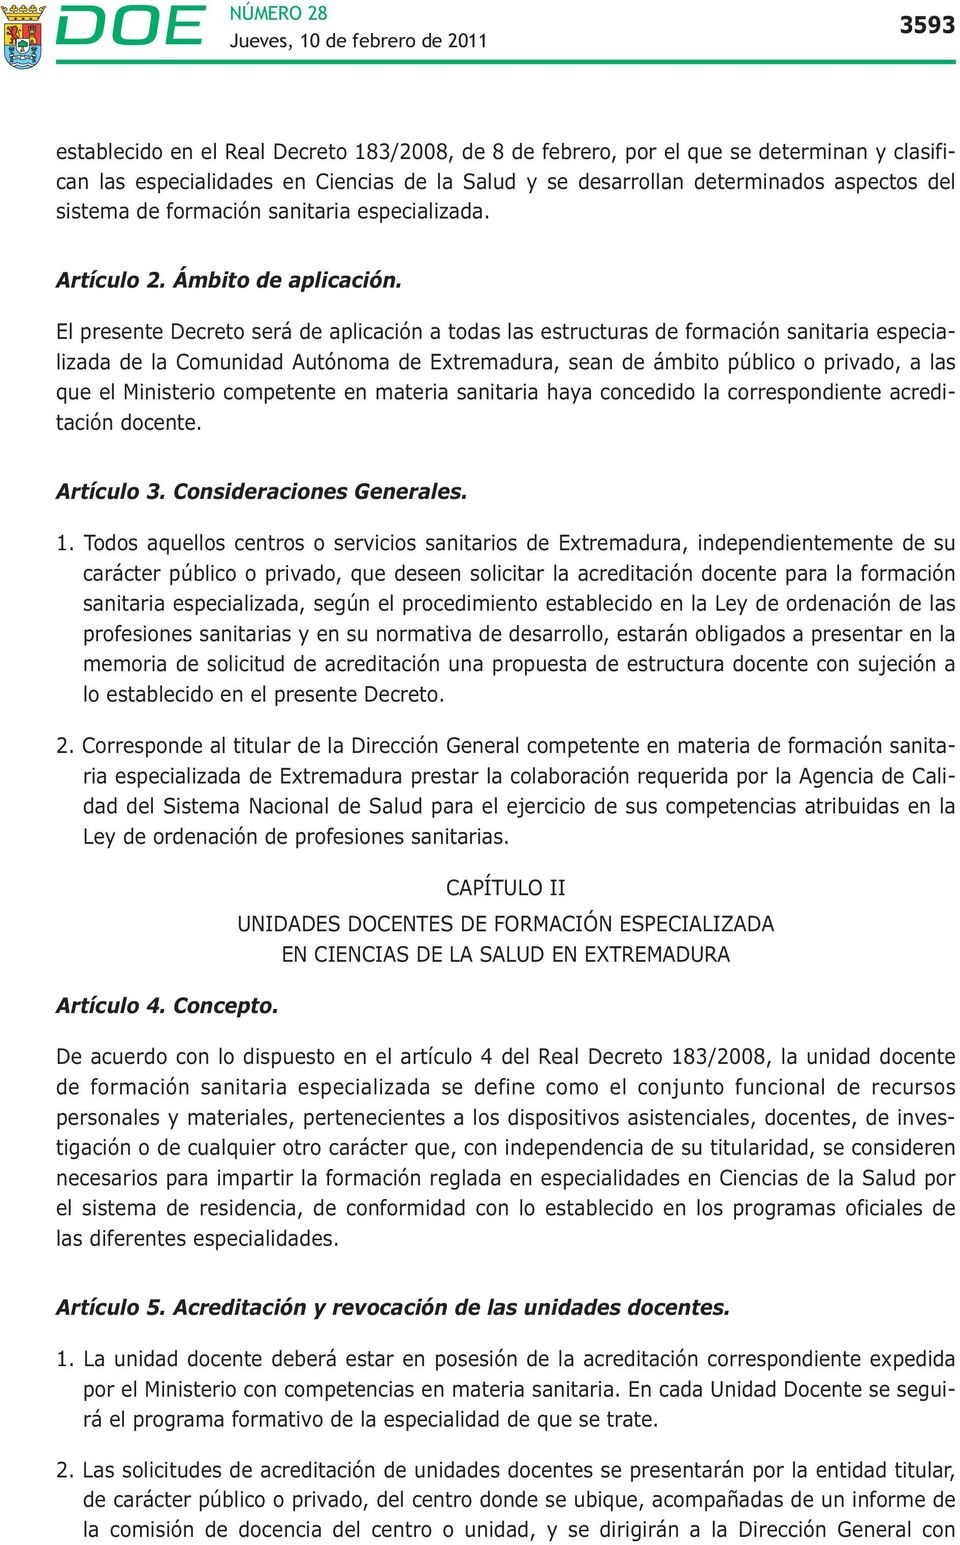 El presente Decreto será de aplicación a todas las estructuras de formación sanitaria especializada de la Comunidad Autónoma de Extremadura, sean de ámbito público o privado, a las que el Ministerio